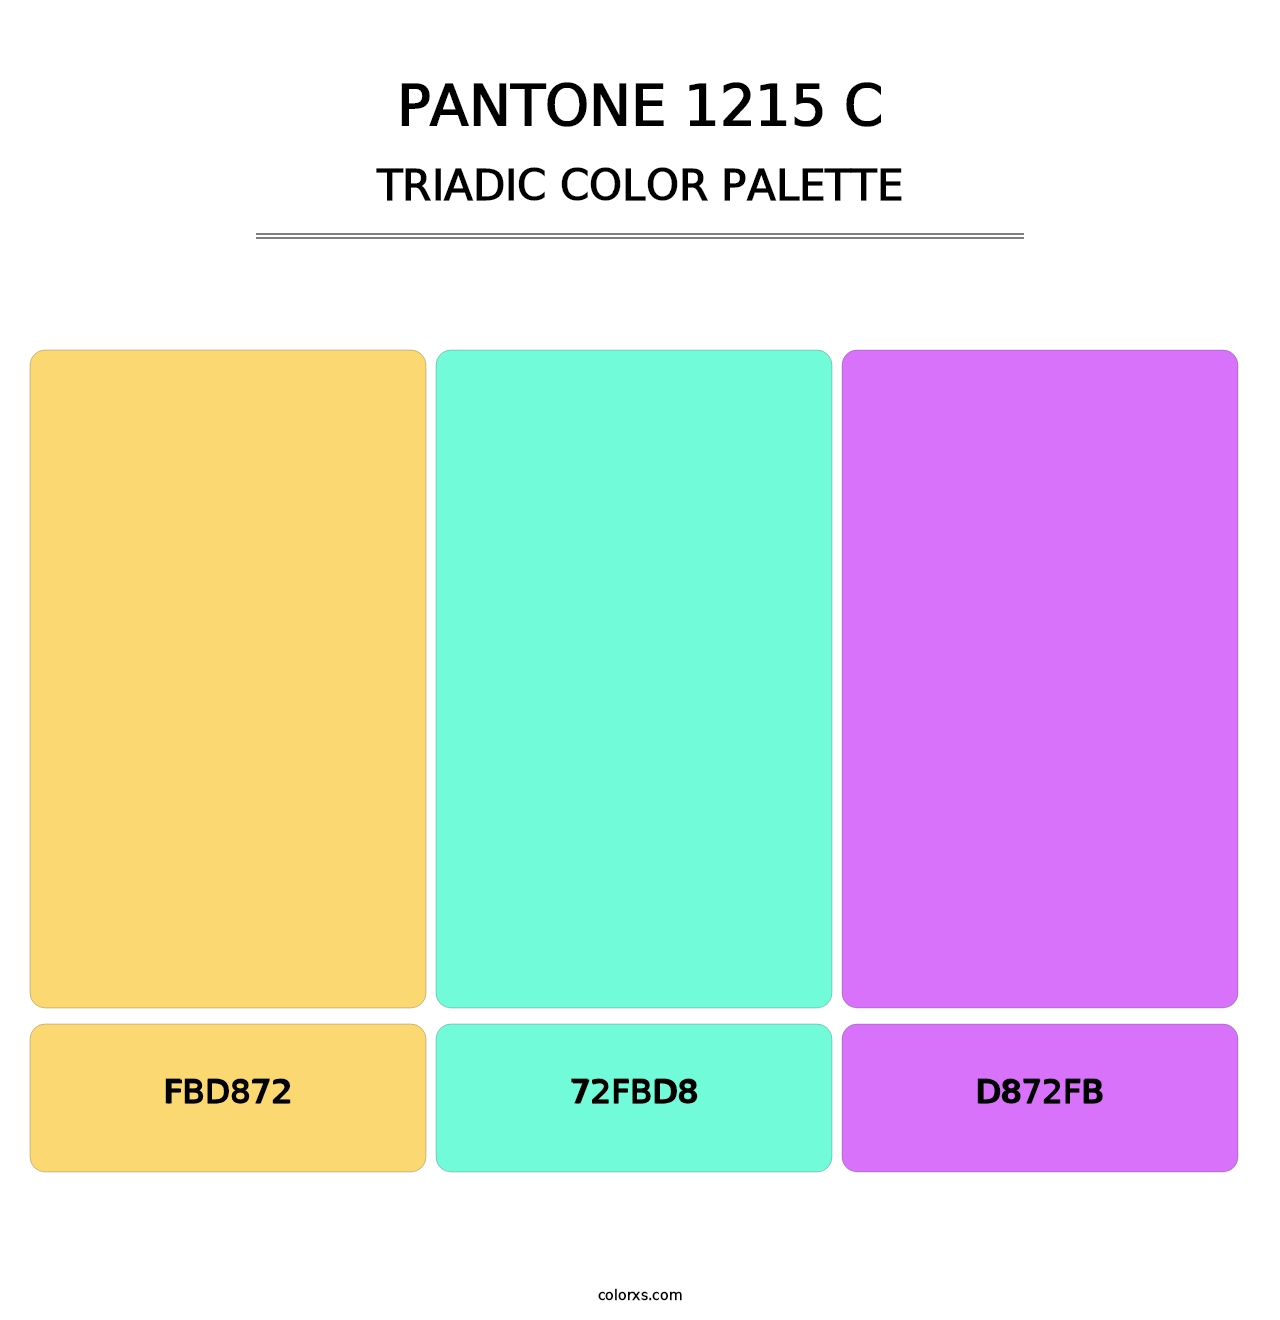 PANTONE 1215 C - Triadic Color Palette